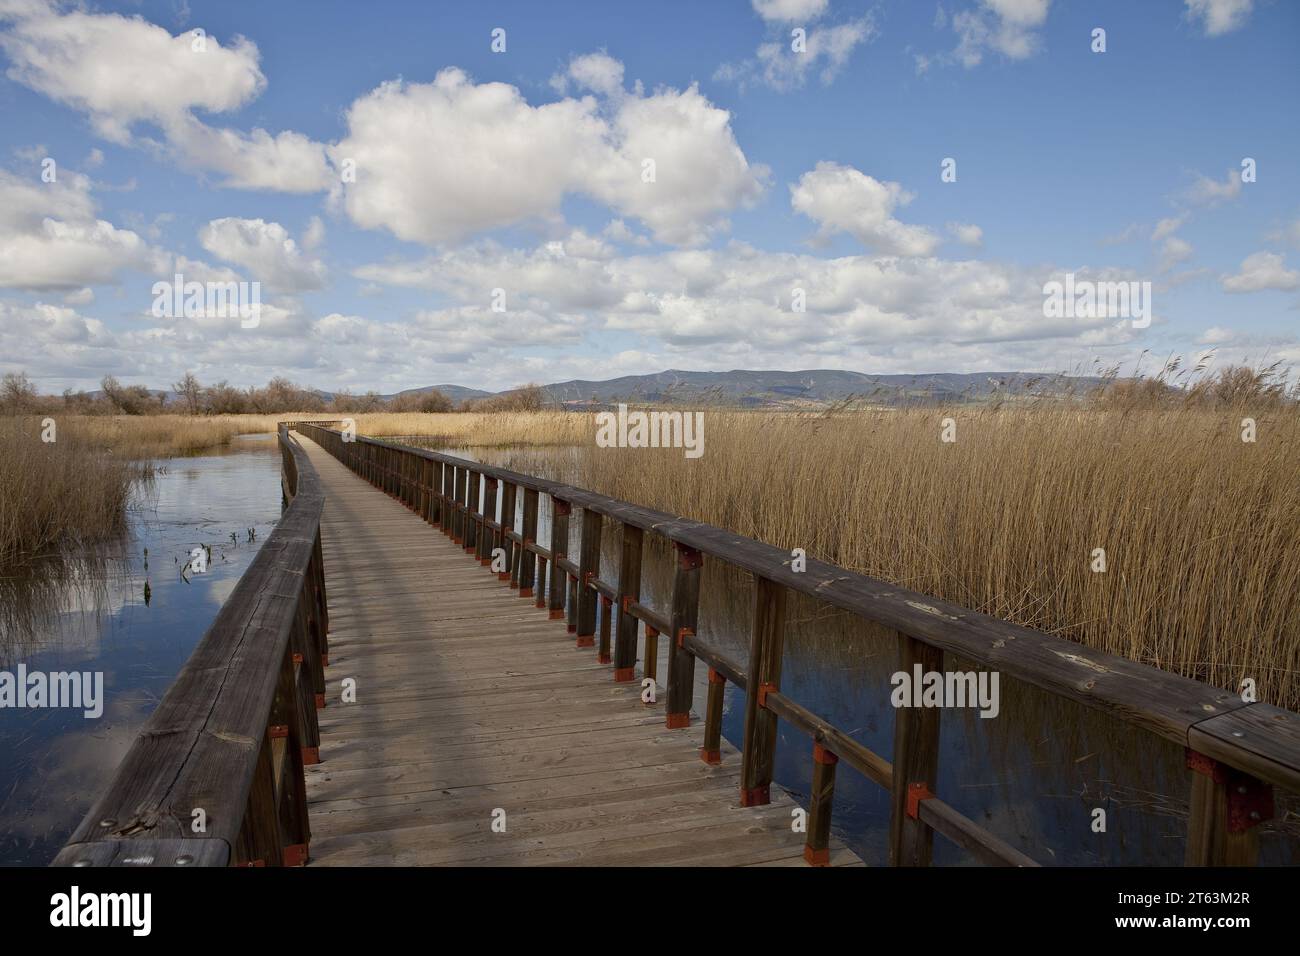 Eine lange Holzbrücke erstreckt sich über ruhiges Wasser in Feuchtgebieten, umgeben von hohen Schilf, mit Bergen und einem blauen Himmel mit Wolken im Hintergrund in CIU Stockfoto